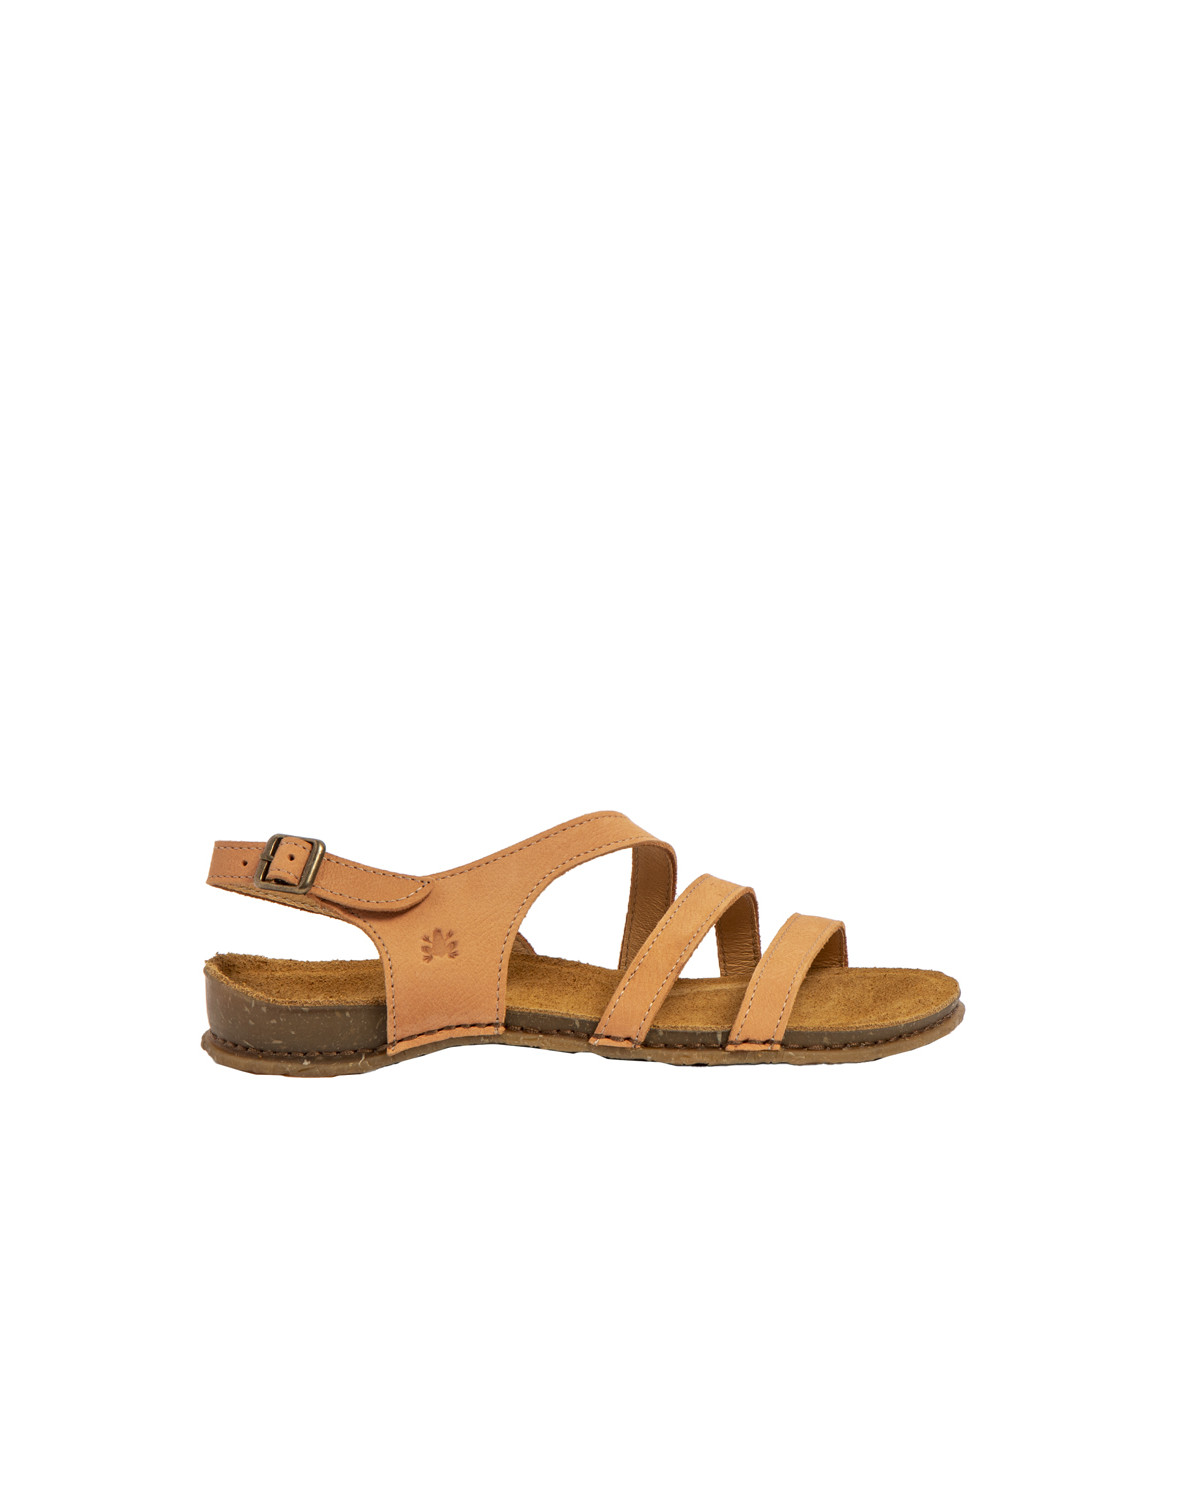 Sandales confortables plates en cuir à semelles ultra confort - Jaune - El naturalista